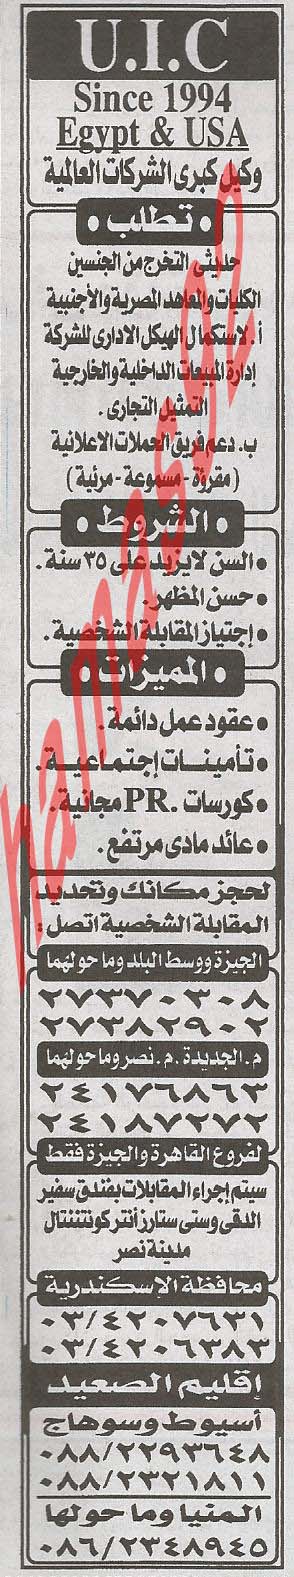 وظائف خالية من جريدة الاخبار المصرية اليوم الثلاثاء 12/3/2013 %D8%A7%D9%84%D8%A7%D8%AE%D8%A8%D8%A7%D8%B1+2